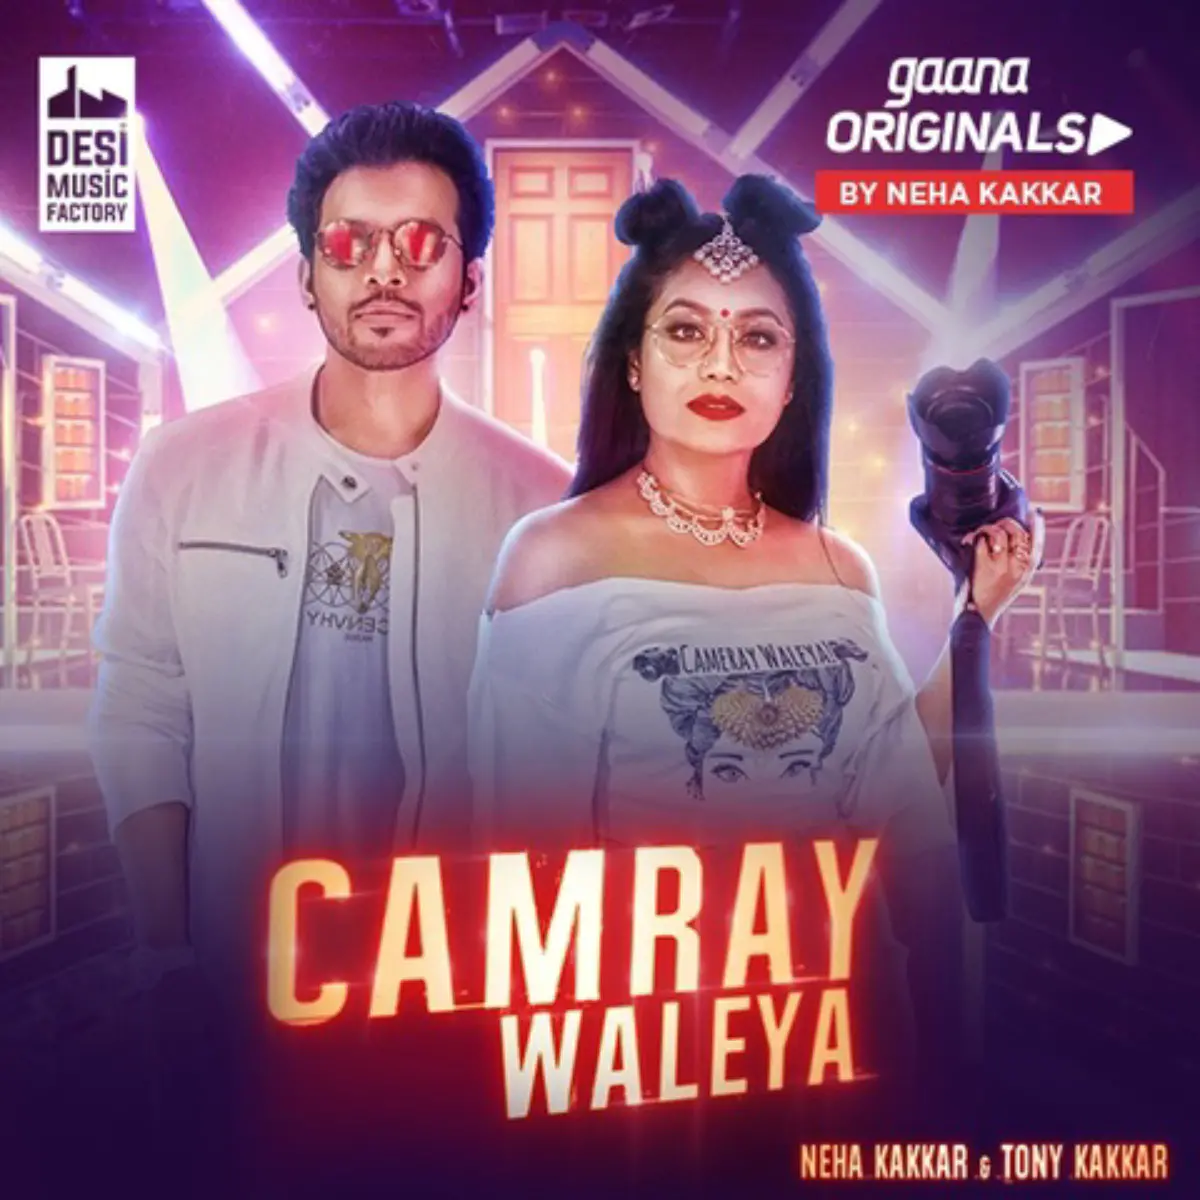 Waleya Camray Waleya Song Lyrics In English Free Online On Gaana Com Downlo...